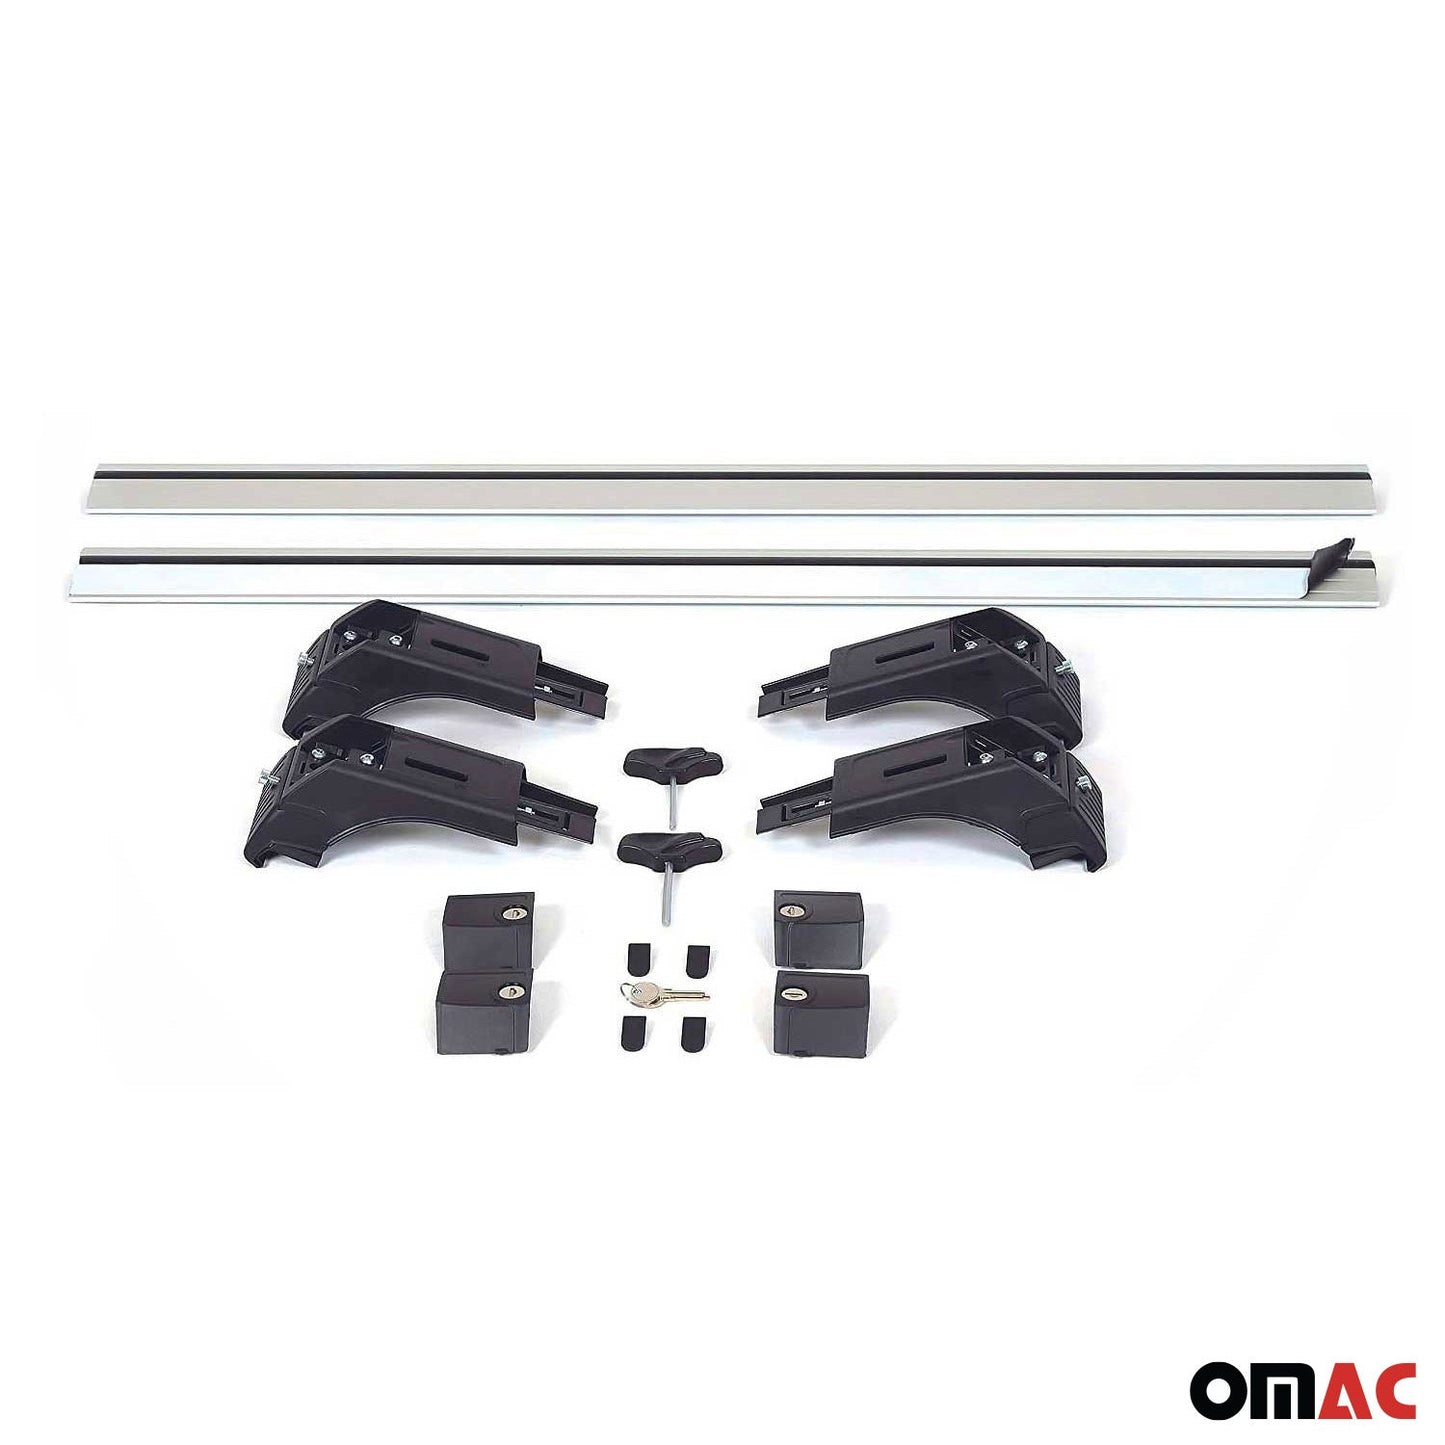 OMAC Roof Rack Cross Bars Aluminum for Hyundai Santa Fe 2013-2018 Gray 2Pcs 3223923